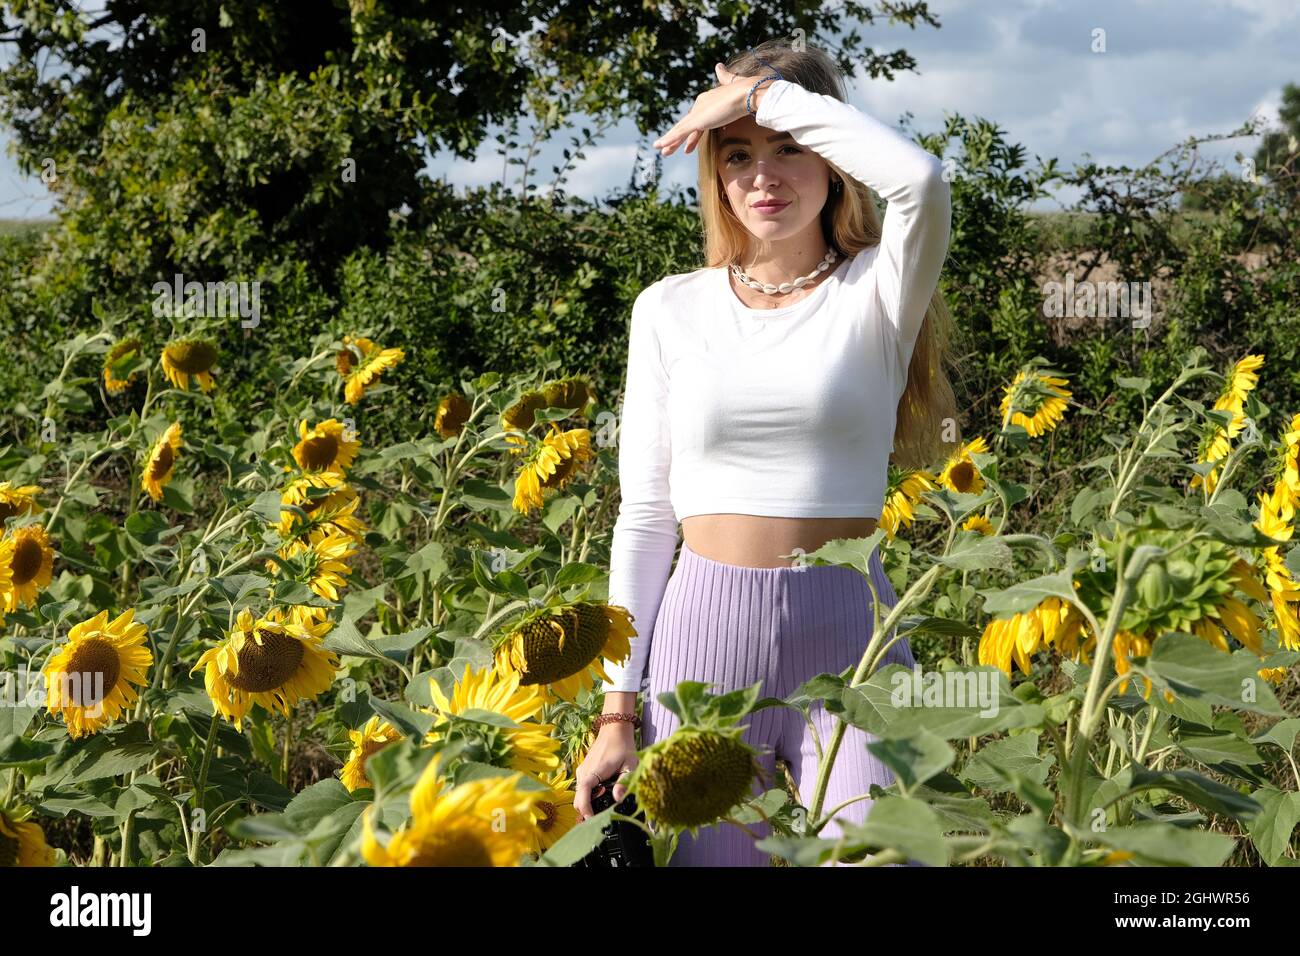 Adolescente debout dans un champ de tournesol en protégeant ses yeux du soleil, France Banque D'Images